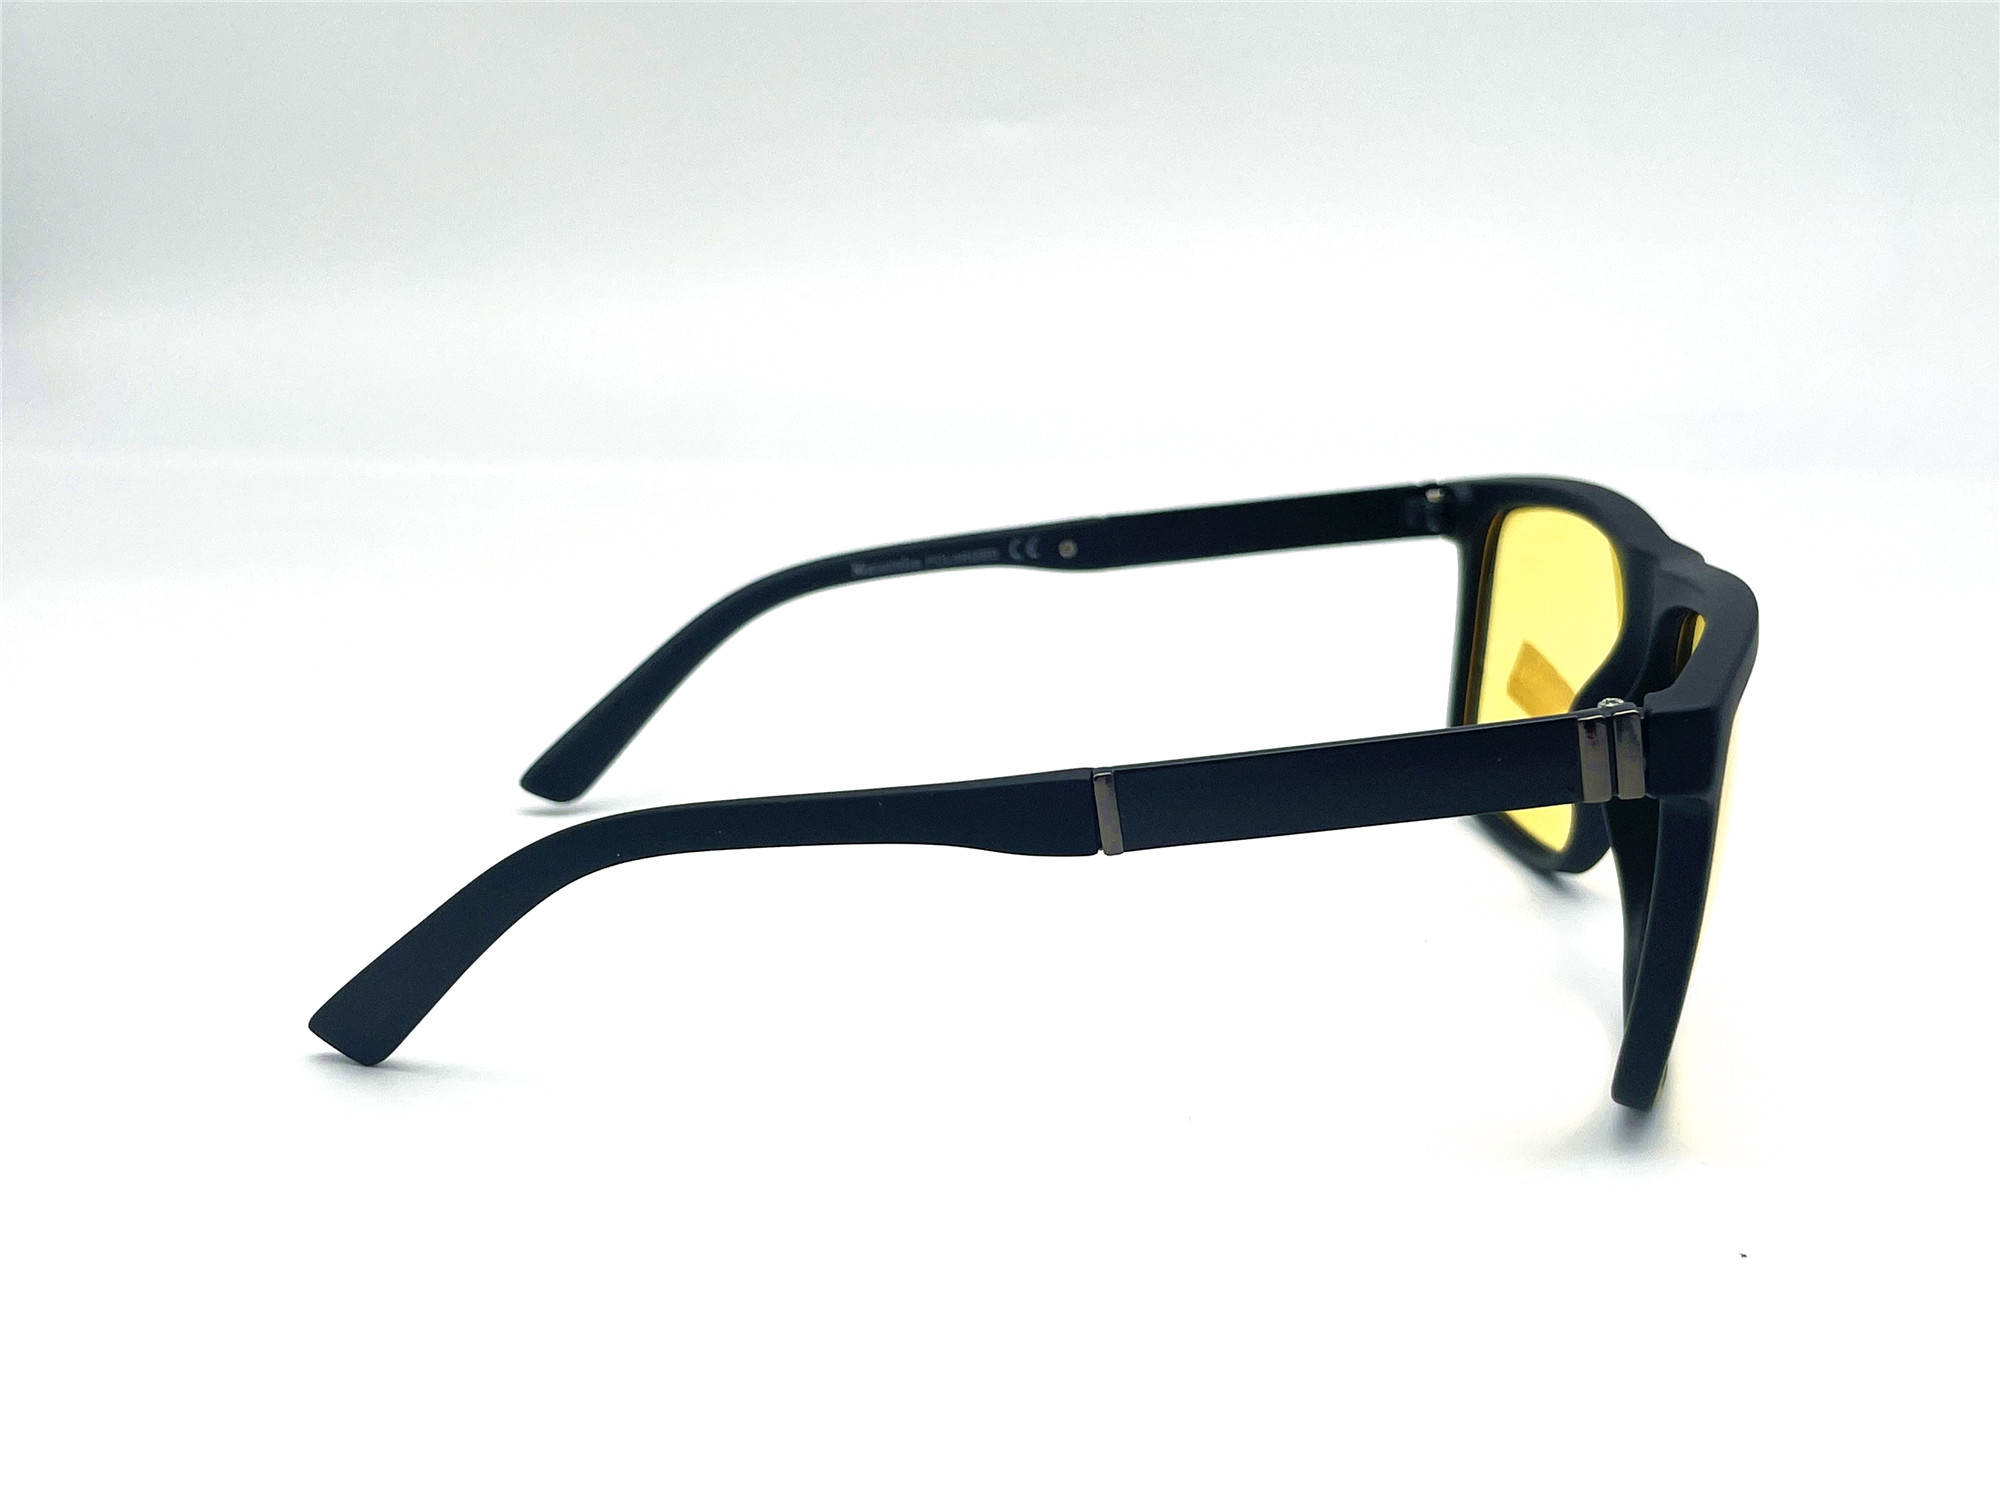  Солнцезащитные очки картинка Мужские Maiersha Polarized Квадратные JS5034-C2 